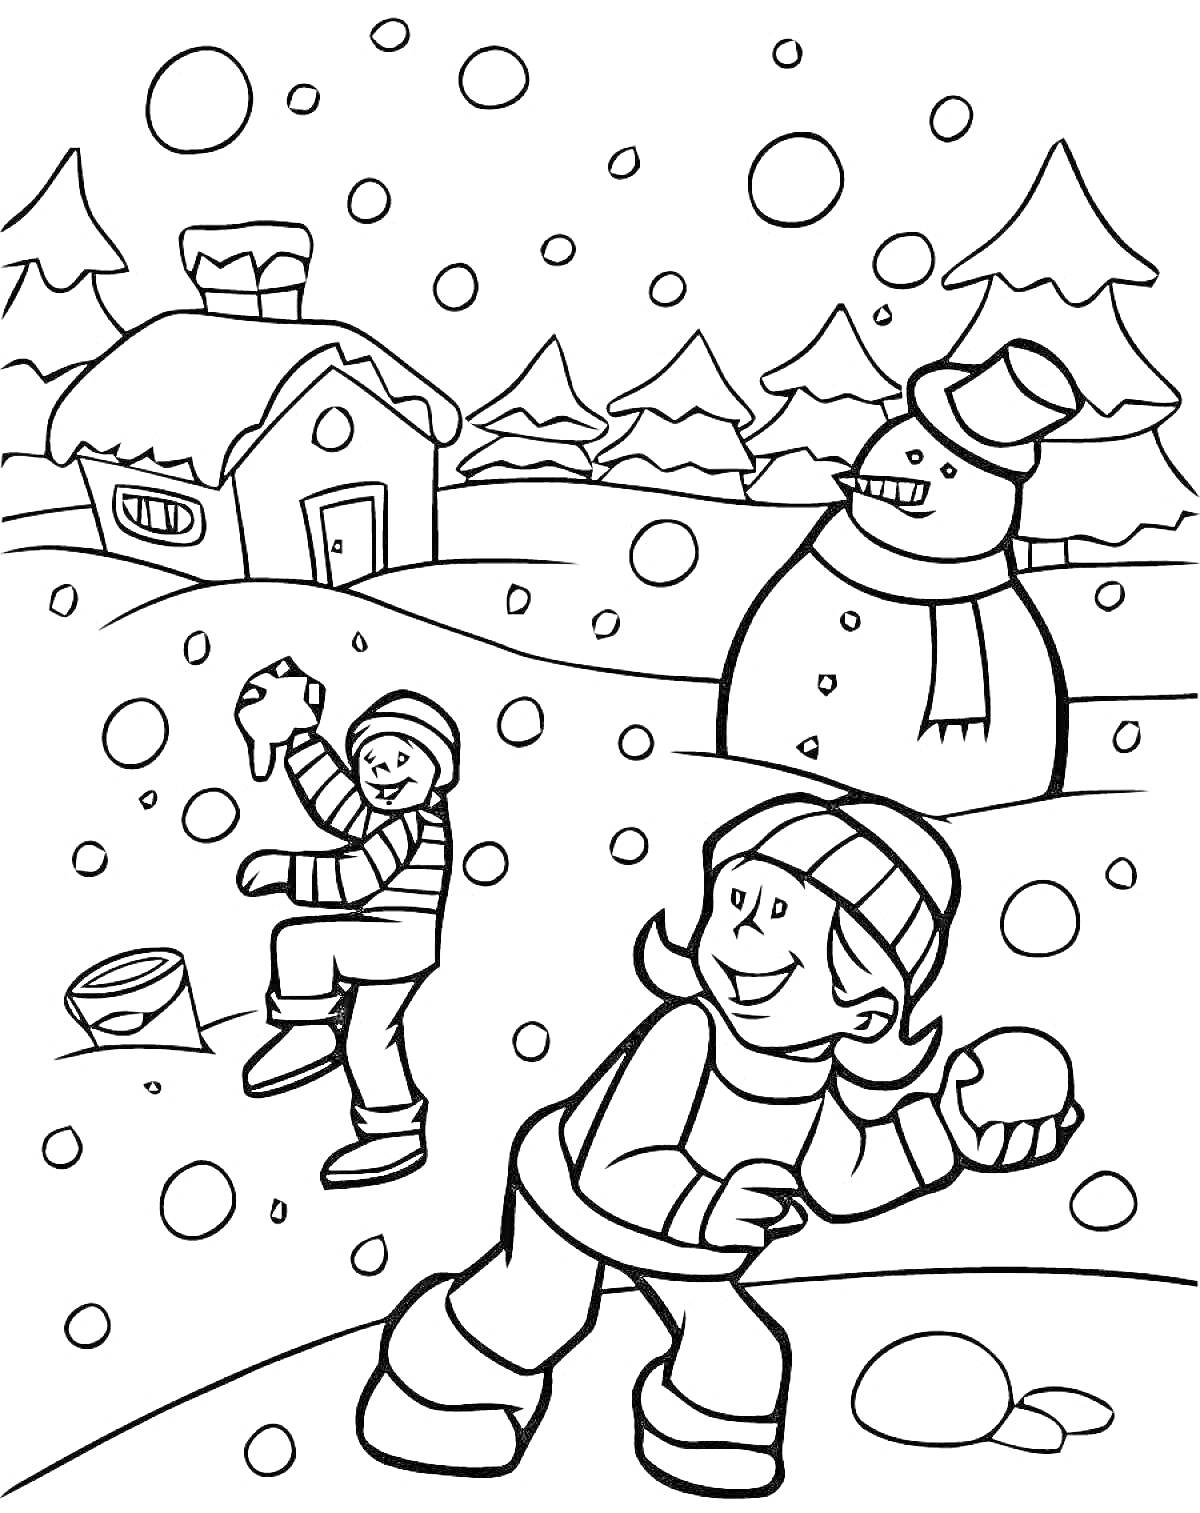 Дети играют в снежки в зимнем лесу у дома и снеговика